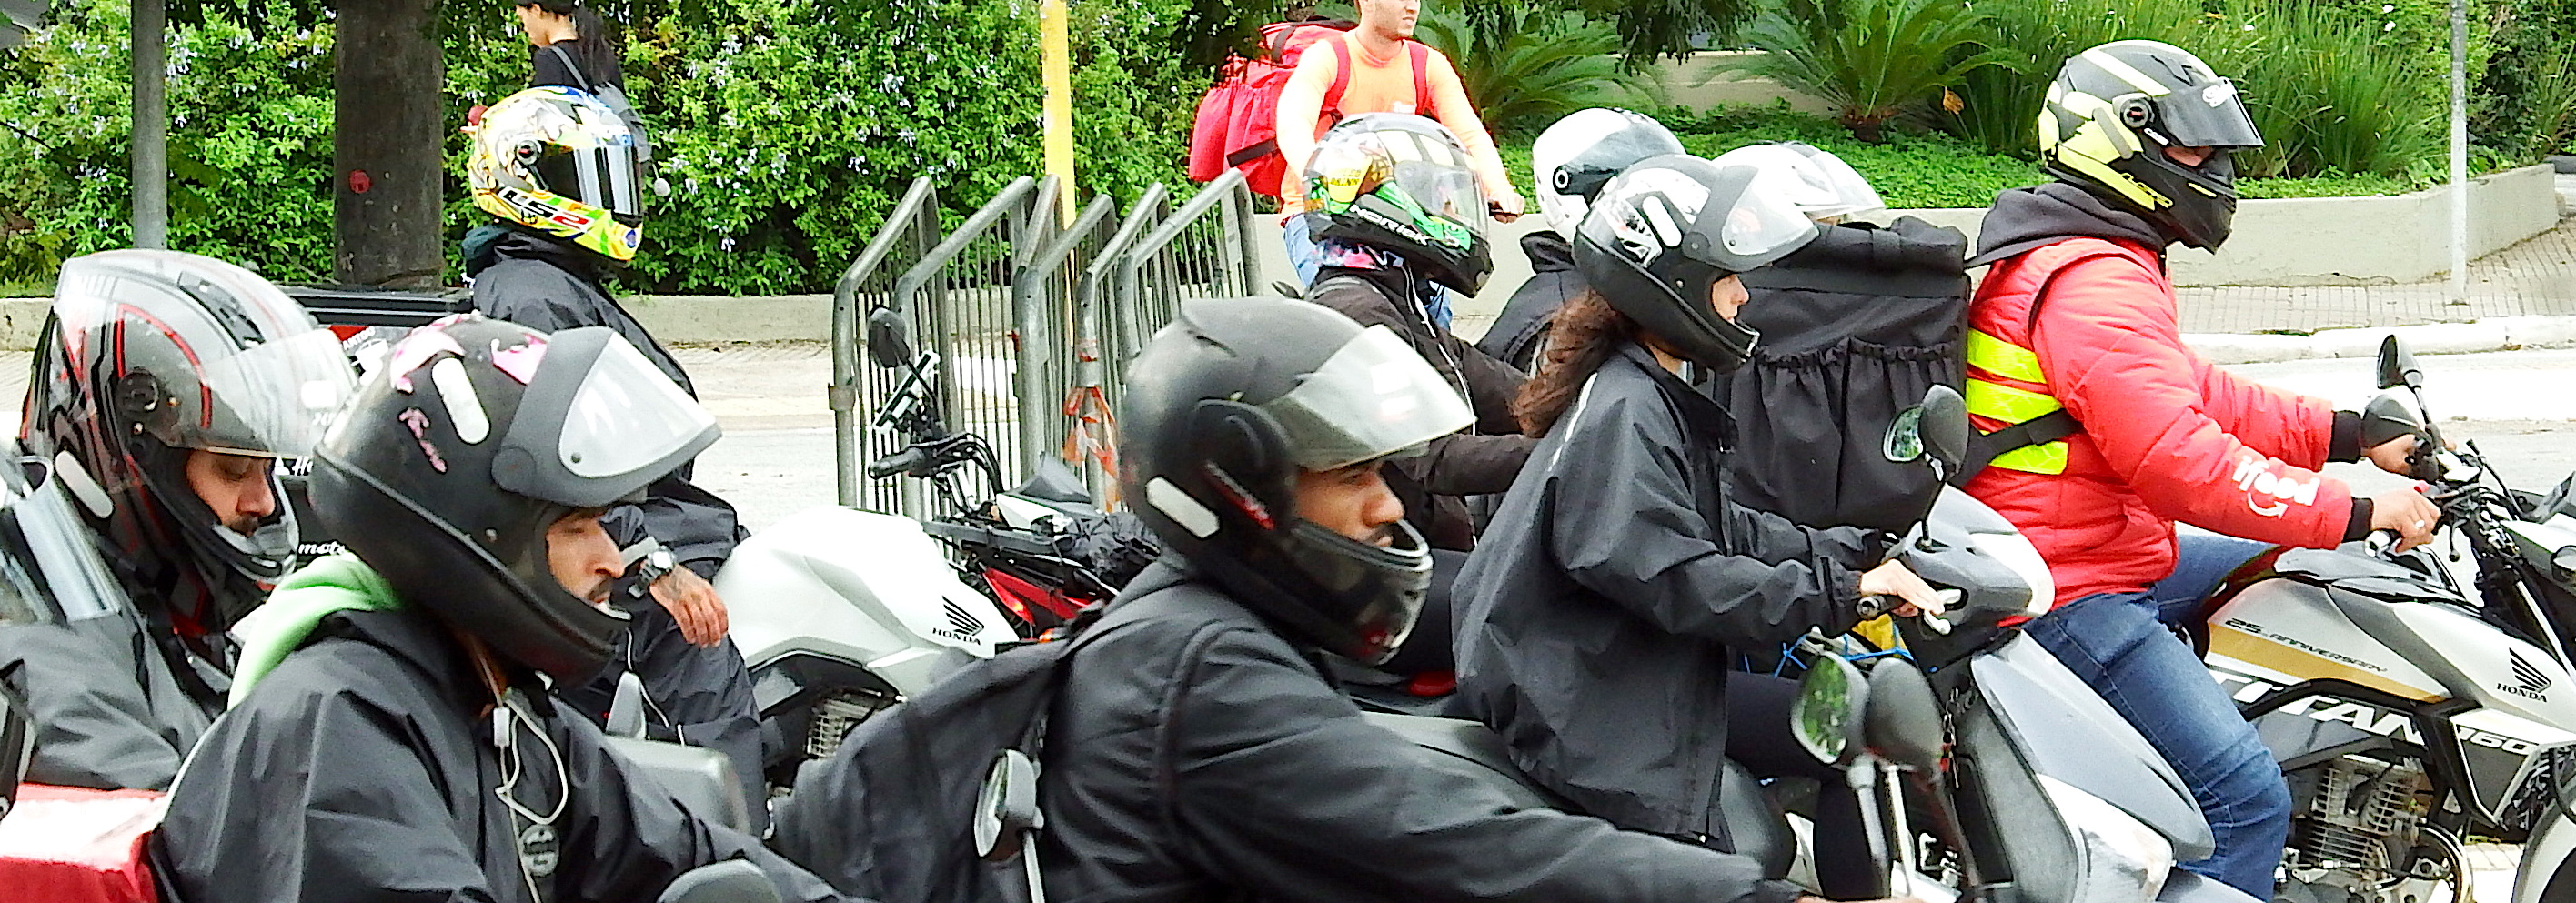 Grupo de Pessoas com motos para Trabalhar